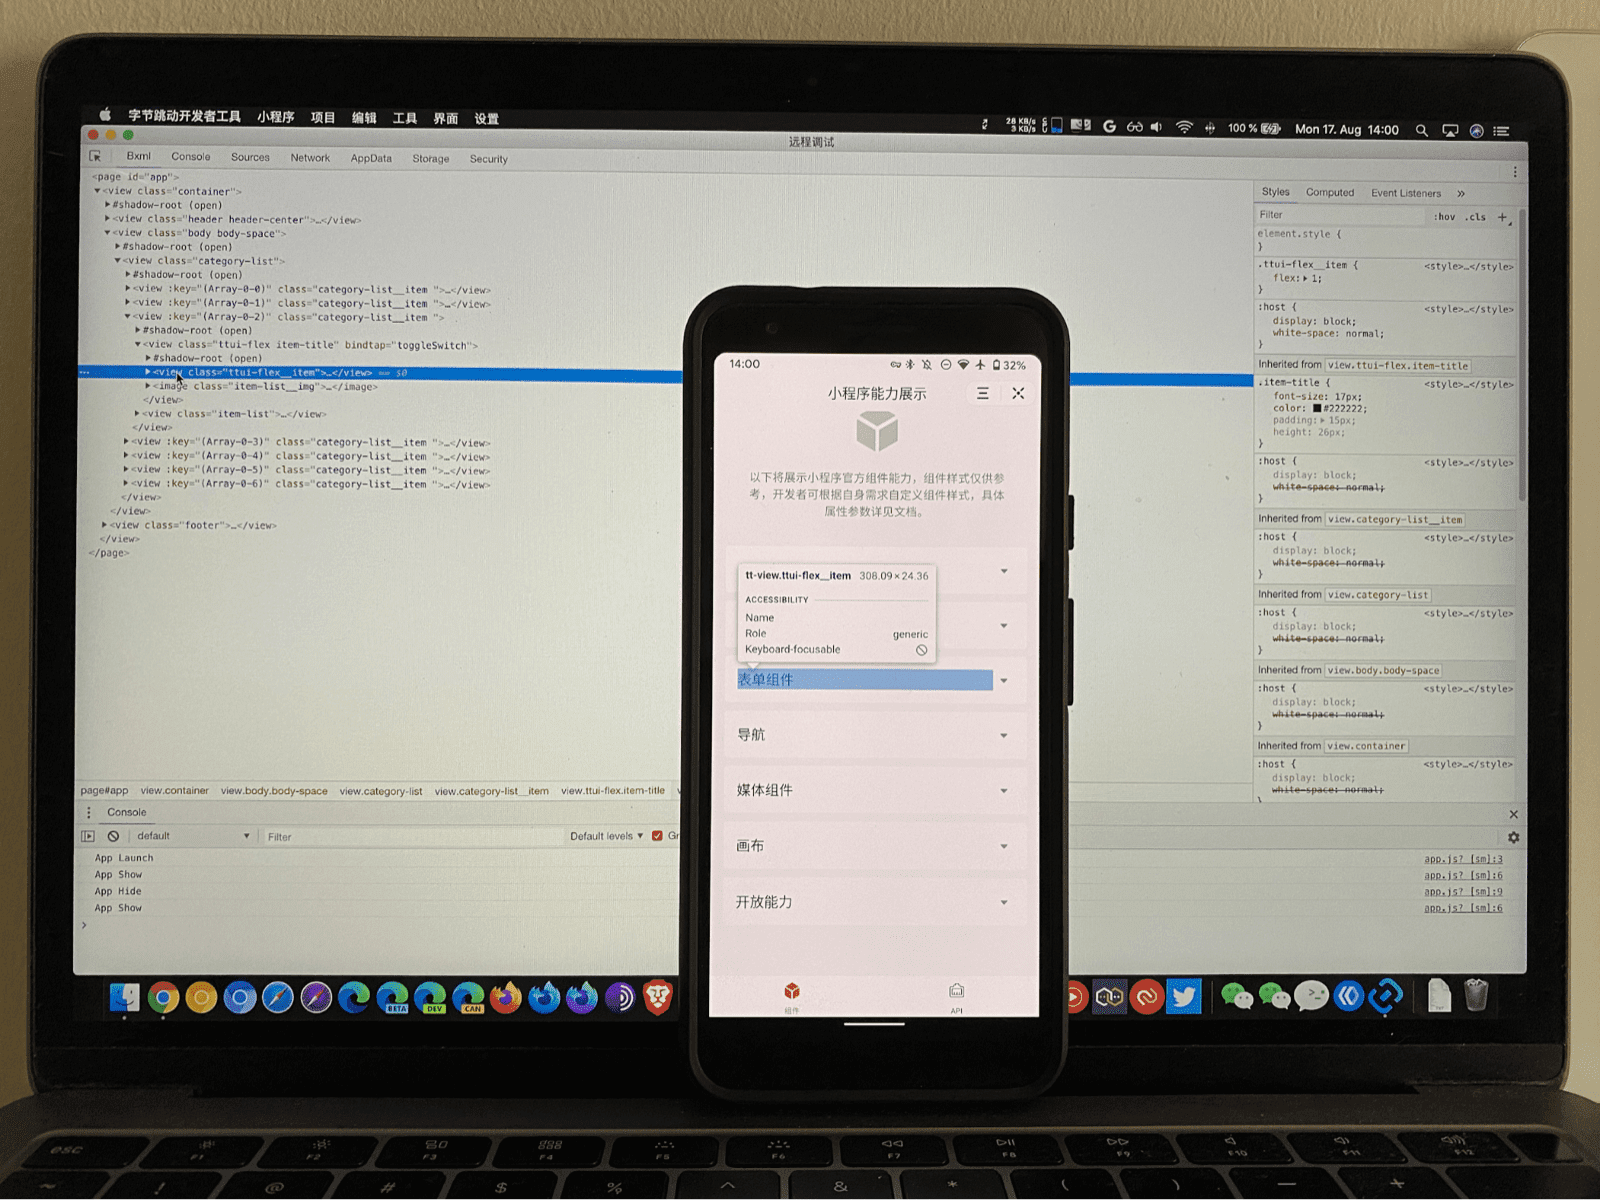 هاتف جوّال يشغِّل تطبيقًا صغيرًا ويظهر على أجزاء من واجهة المستخدم تم تمييزها من خلال برنامج تصحيح الأخطاء في ByteDance DevTool يعمل على كمبيوتر محمول يفحصه